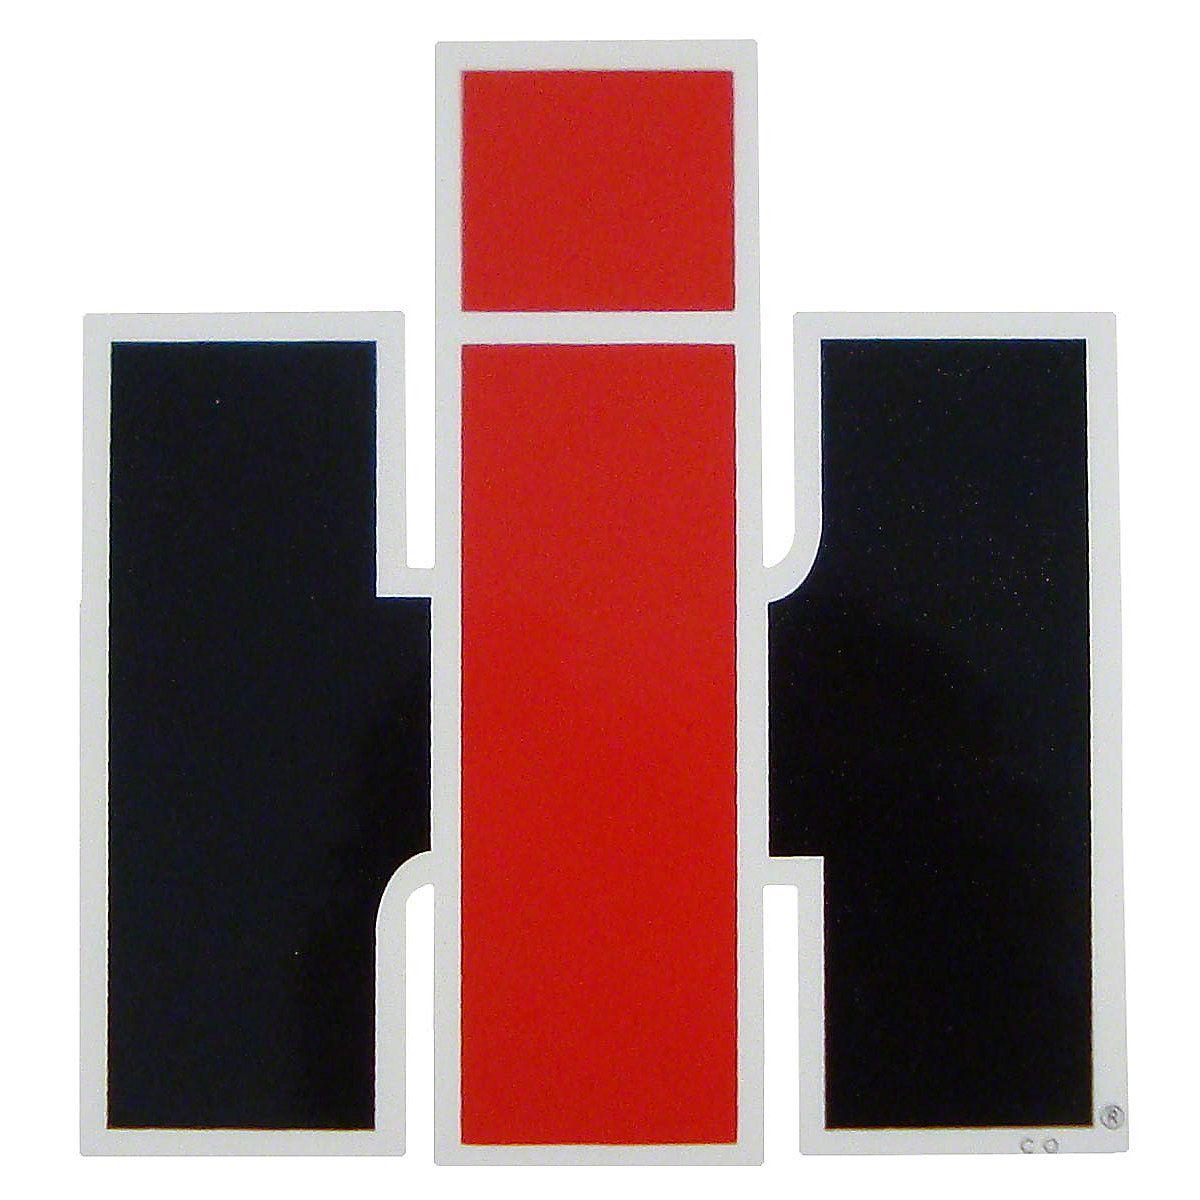 IHC Logo - DEC463 LOGO DECAL 4 1 2 WIDE X 4 3 4 TALL